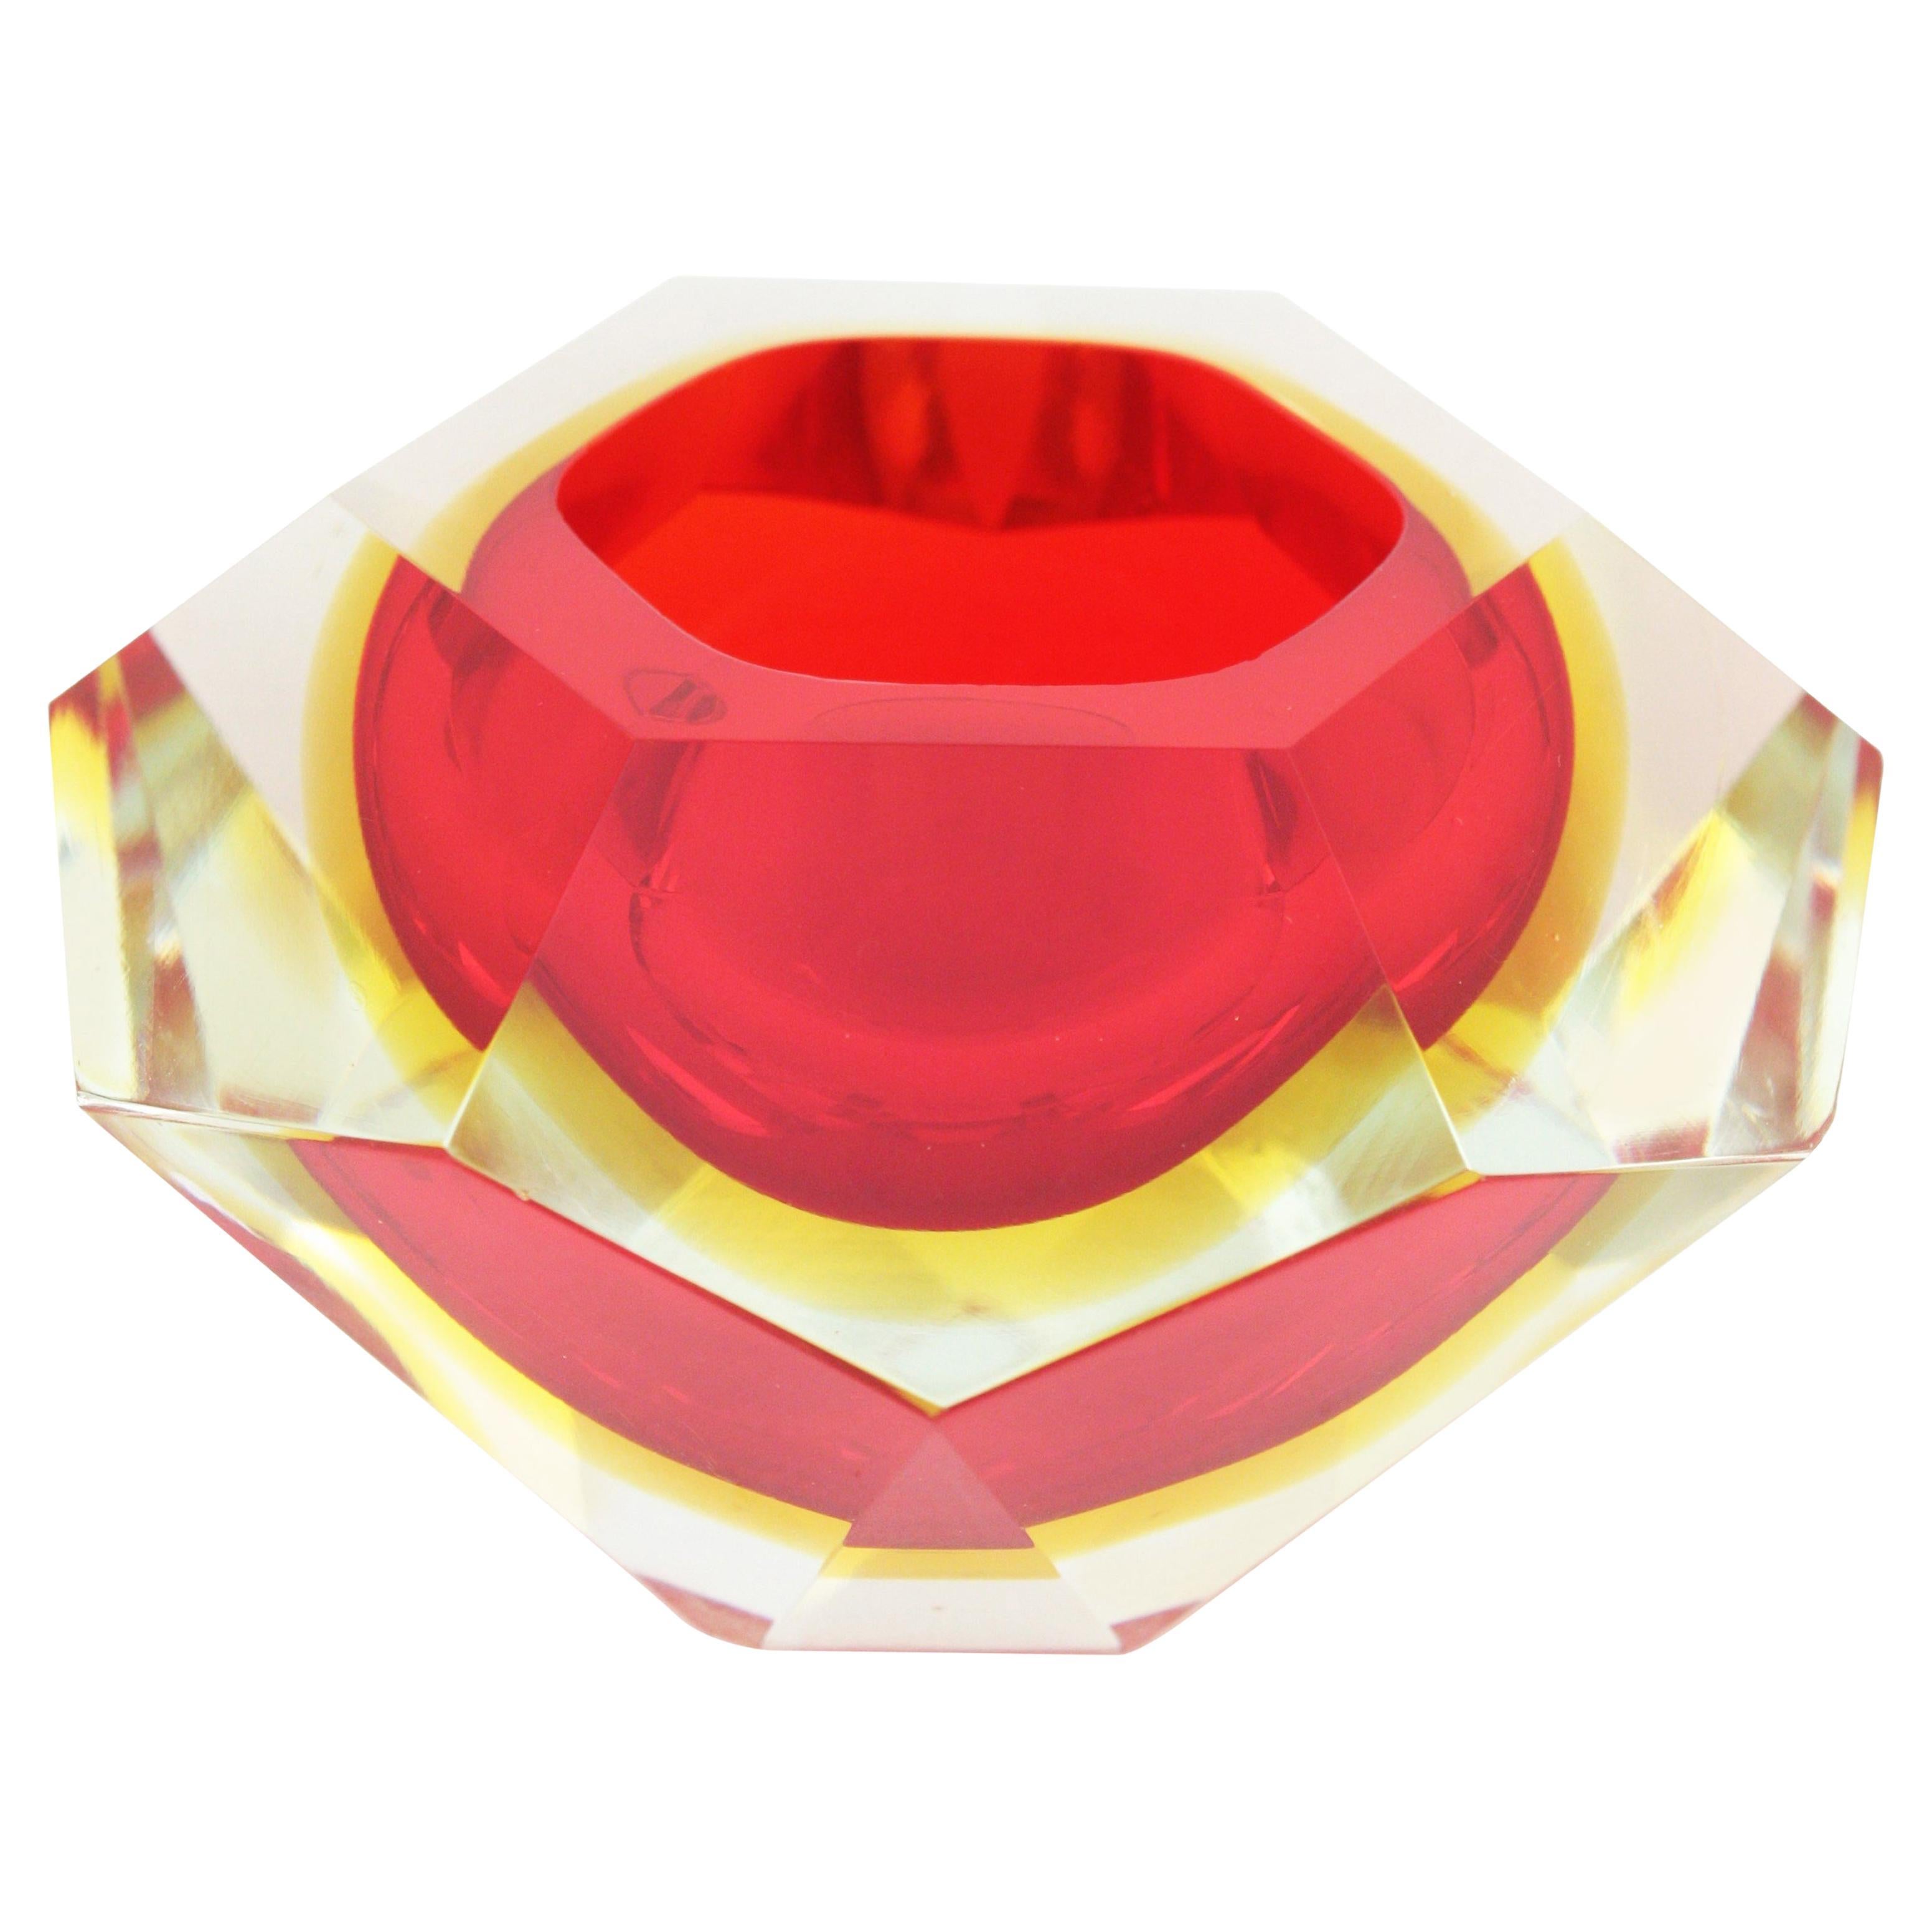 Bol ou cendrier en verre de Murano à facettes rouges, jaunes et transparentes avec diamants Flavio Poli